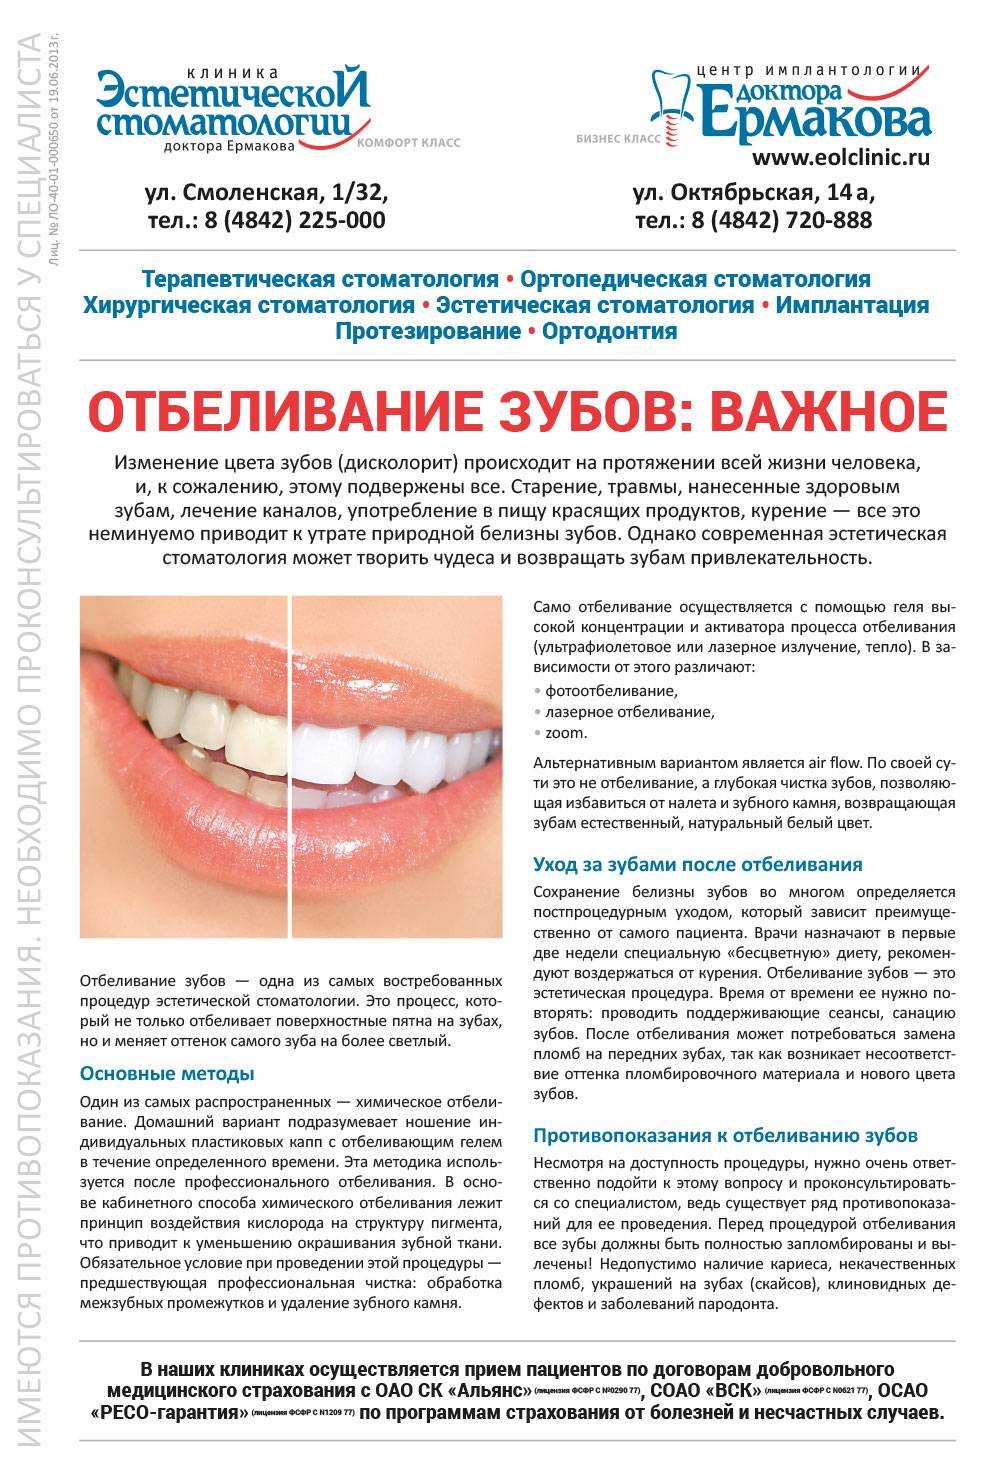 после проведения отбеливания зубов у пациентов может